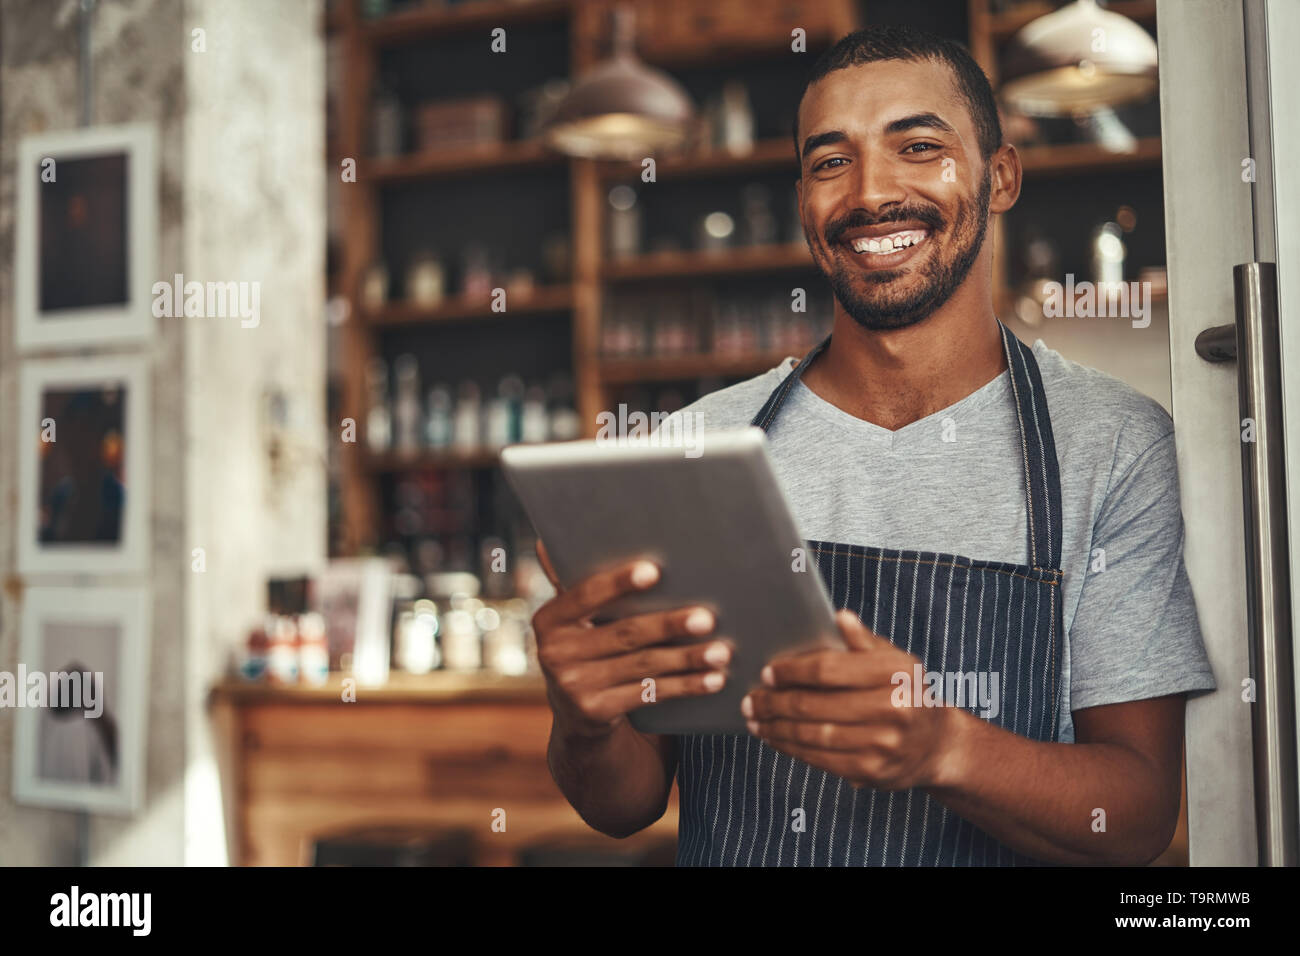 Male cafe owner holding digital tablet dans sa main Banque D'Images